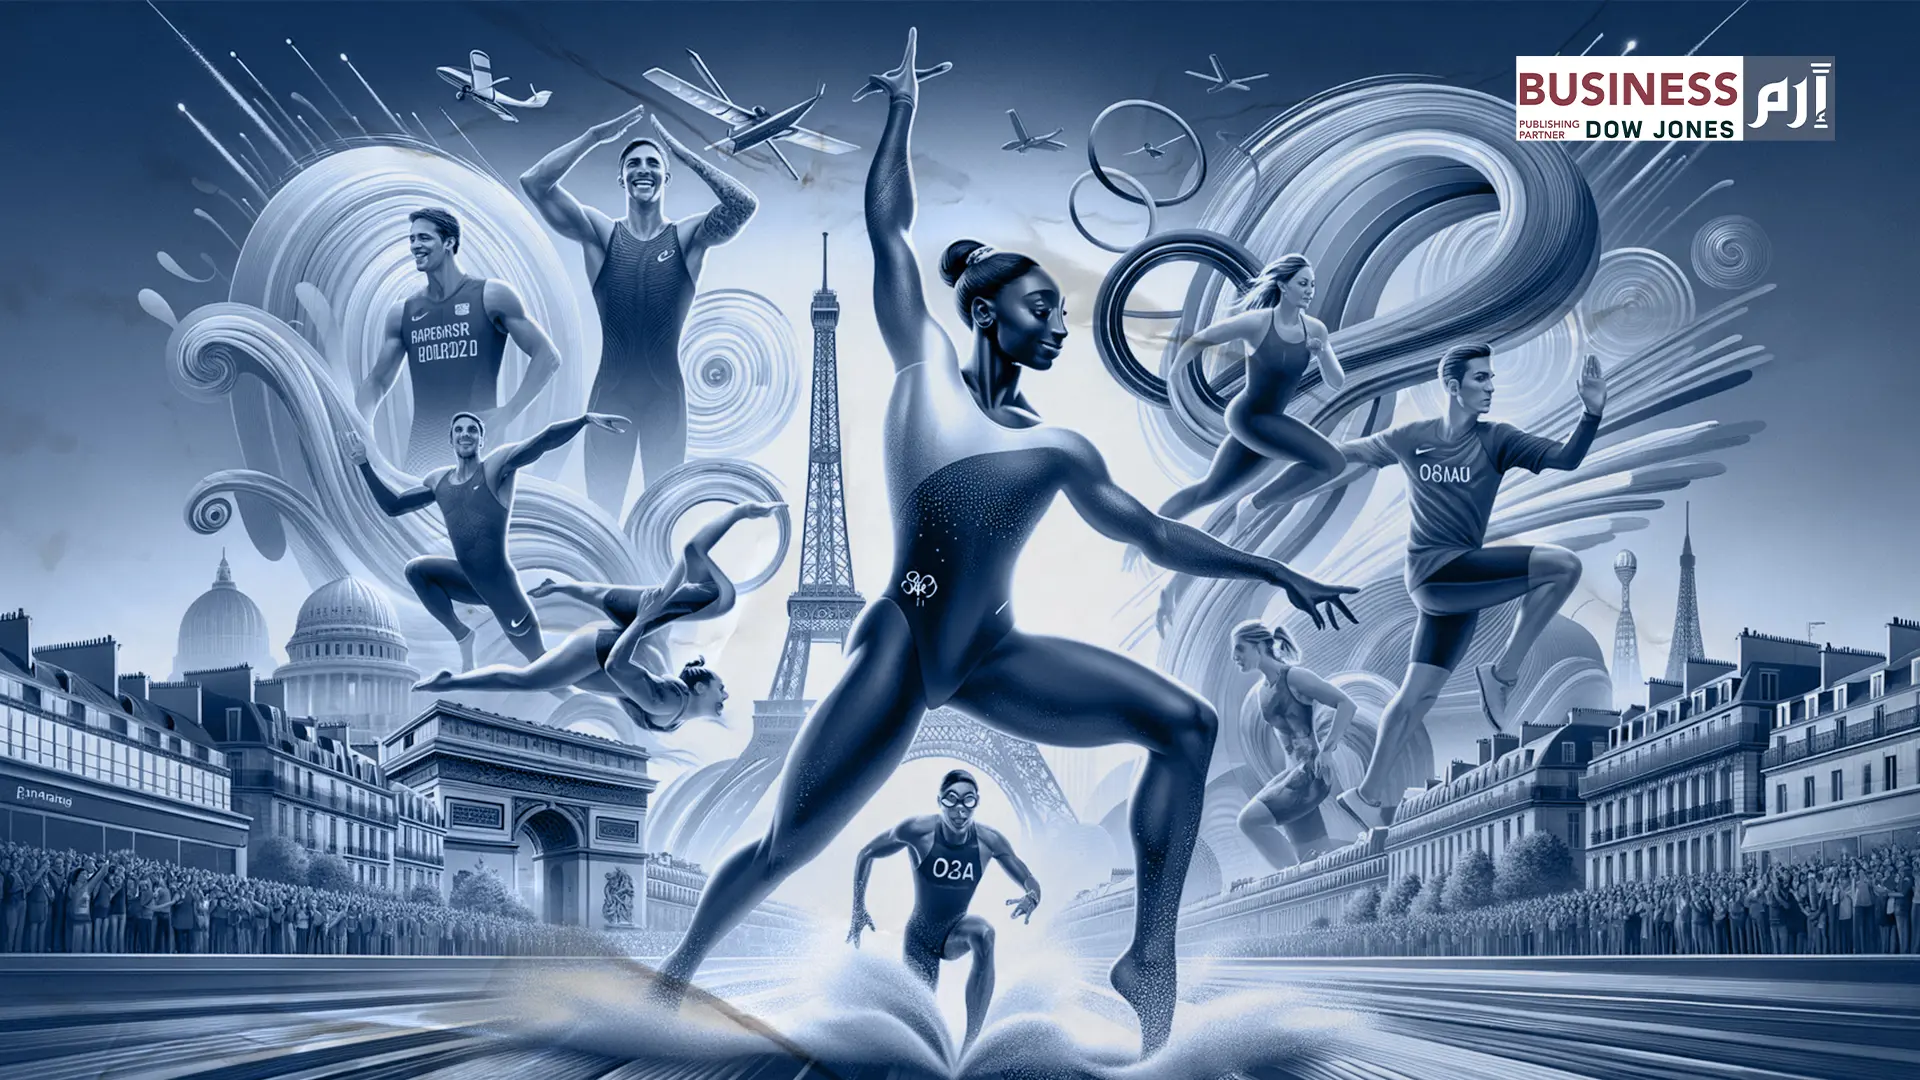 رياضيون صينيون يتصدّرون عالم الفخامة في "أولمبياد باريس"